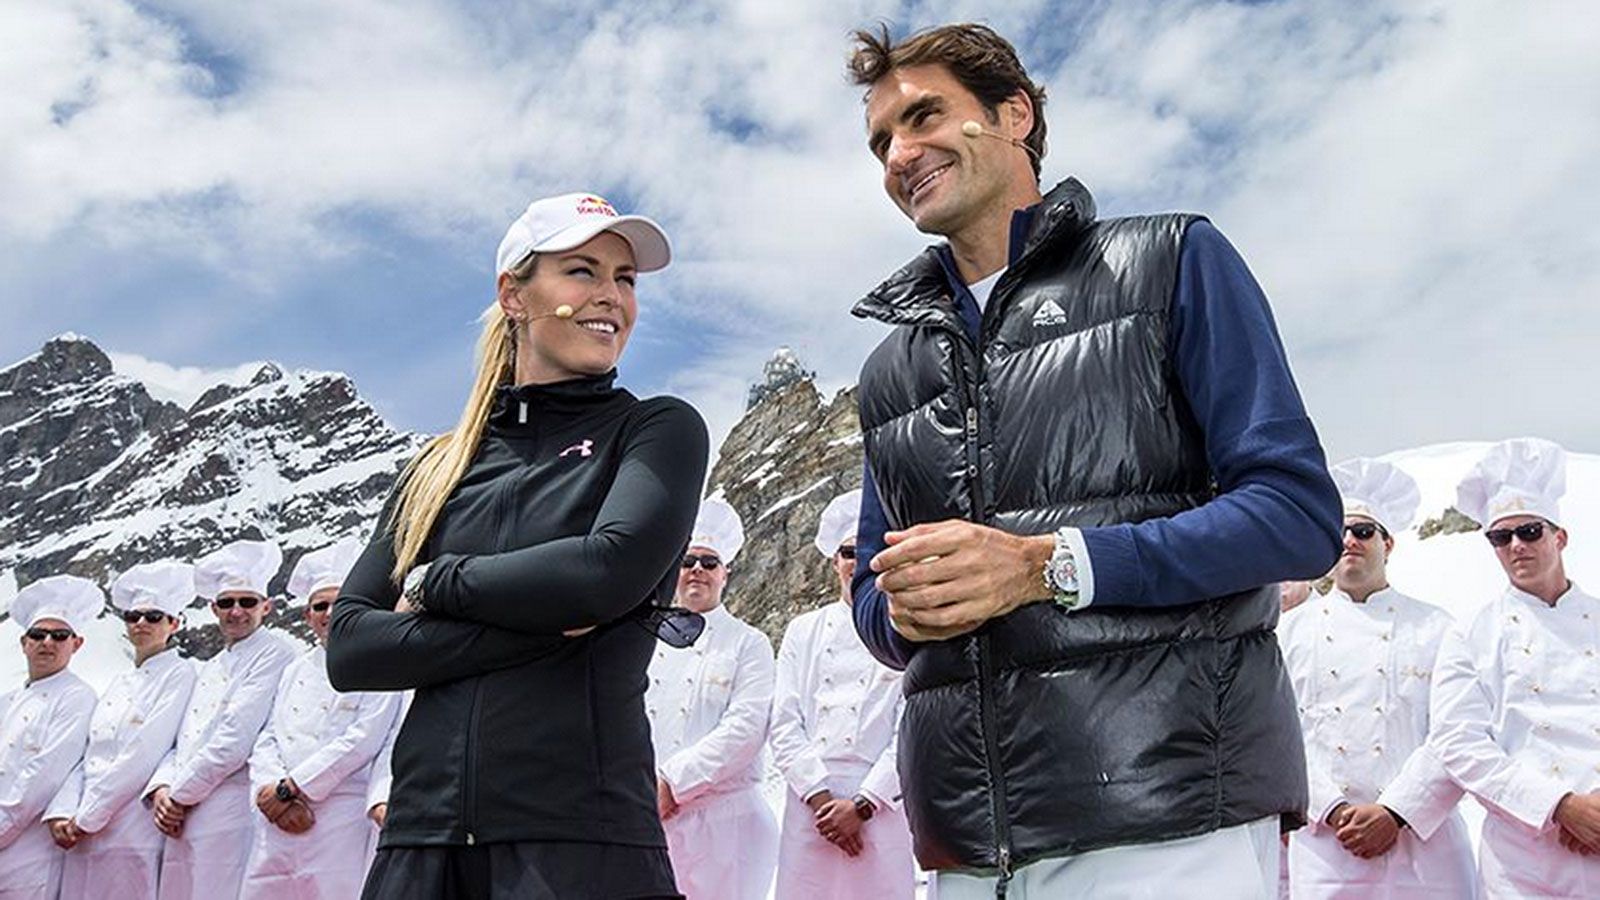 Roger Federer y Lindsey Vonn jugaron al tenis